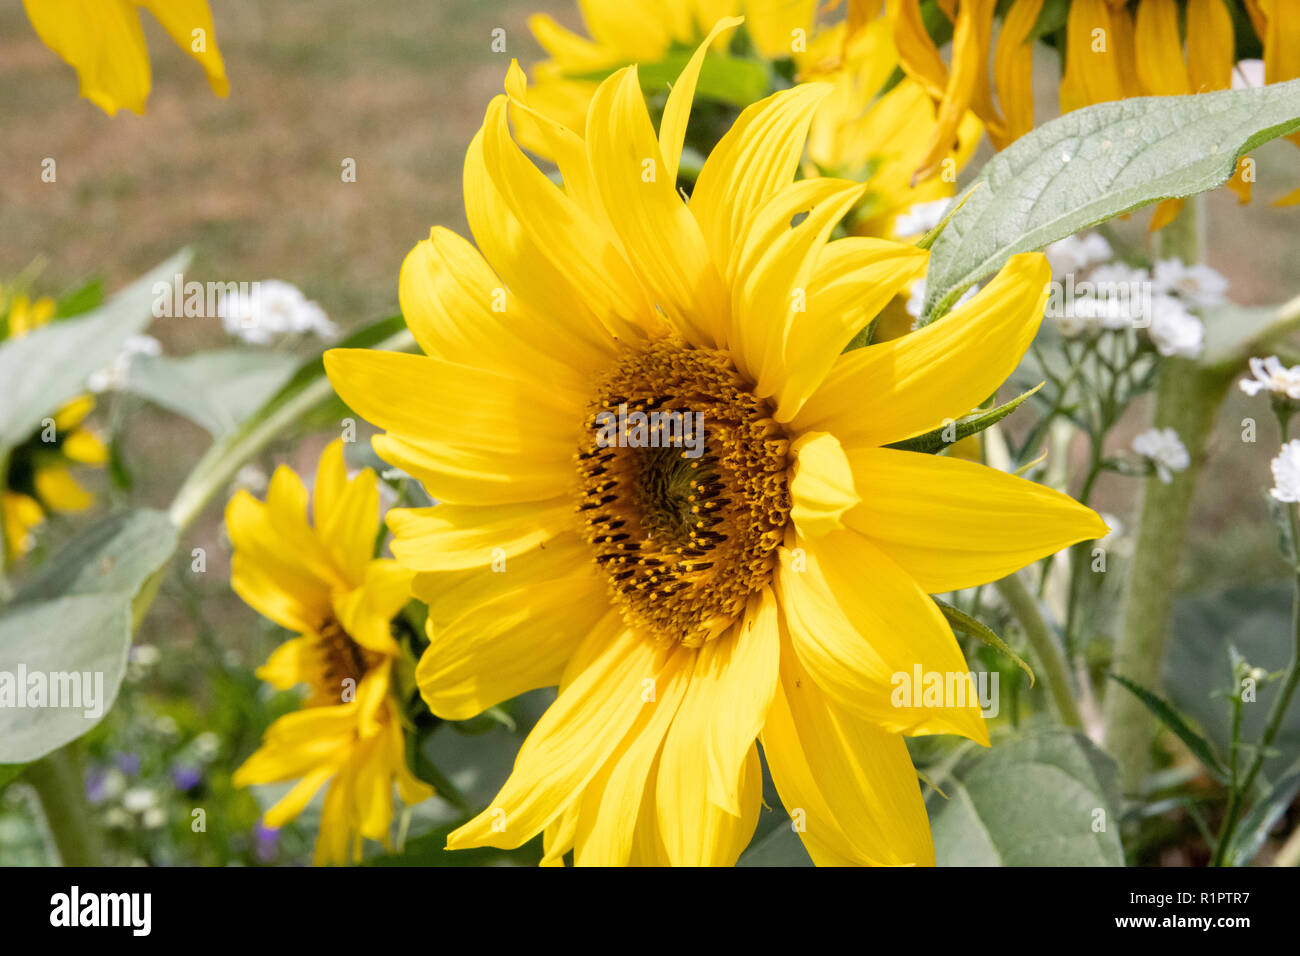 Yellow sunflower close up Stock Photo